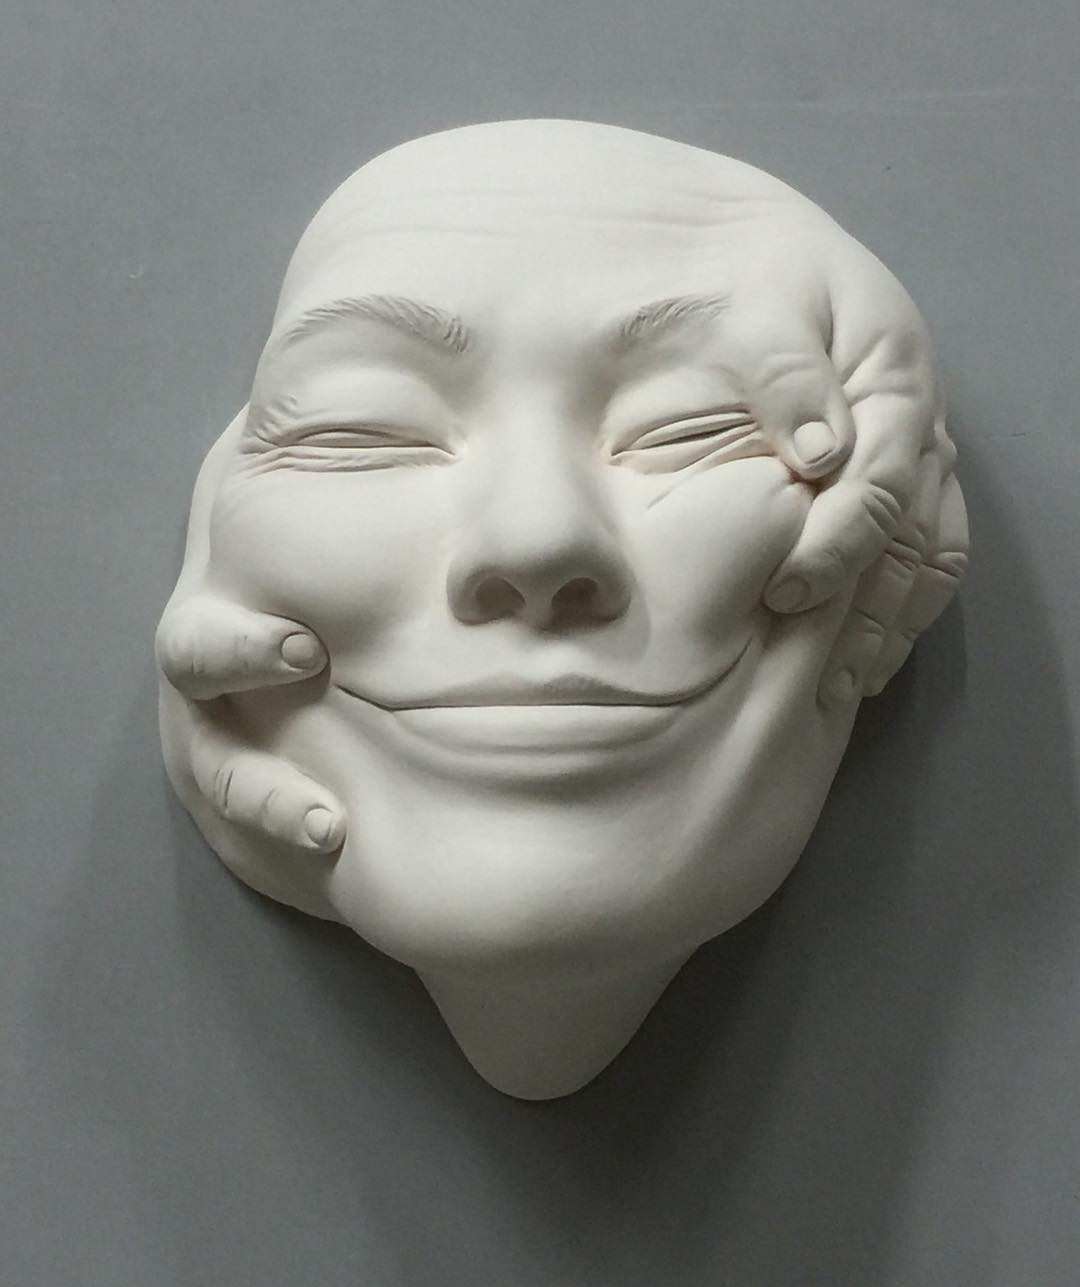 emotive ceramic sculptures